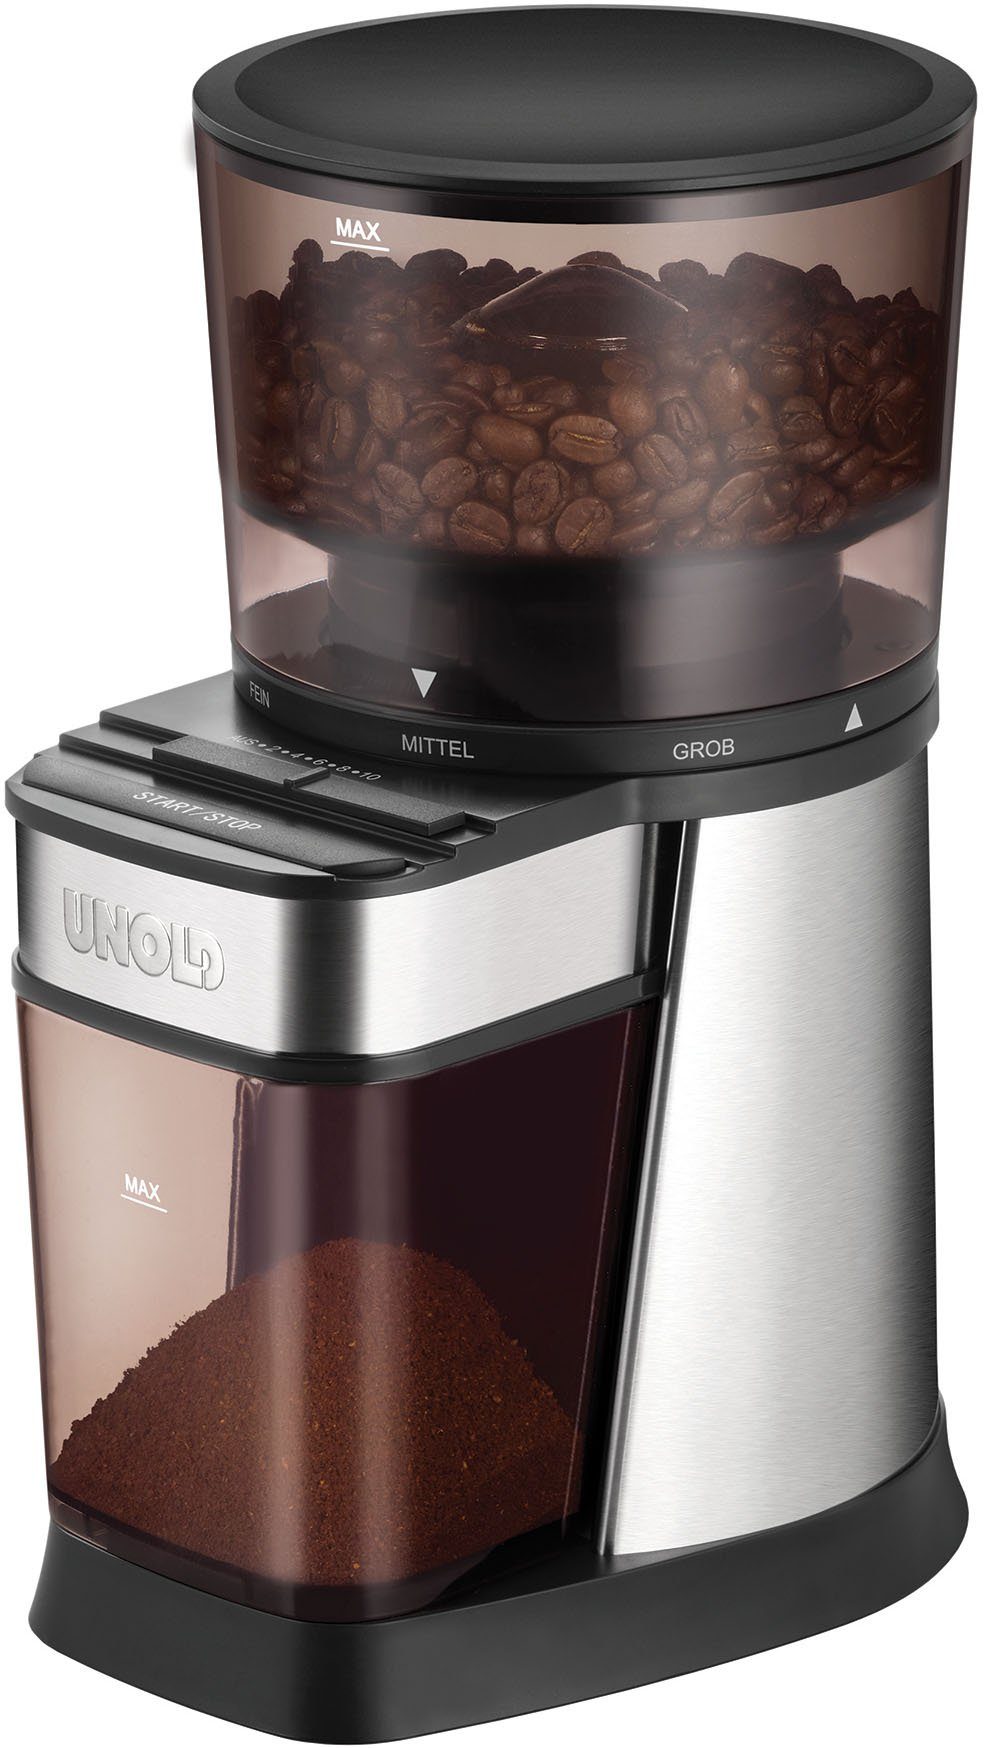 Unold Kaffeemühle Edel 28915, 150 W, Kegelmahlwerk, 250 g Bohnenbehälter  online kaufen | OTTO